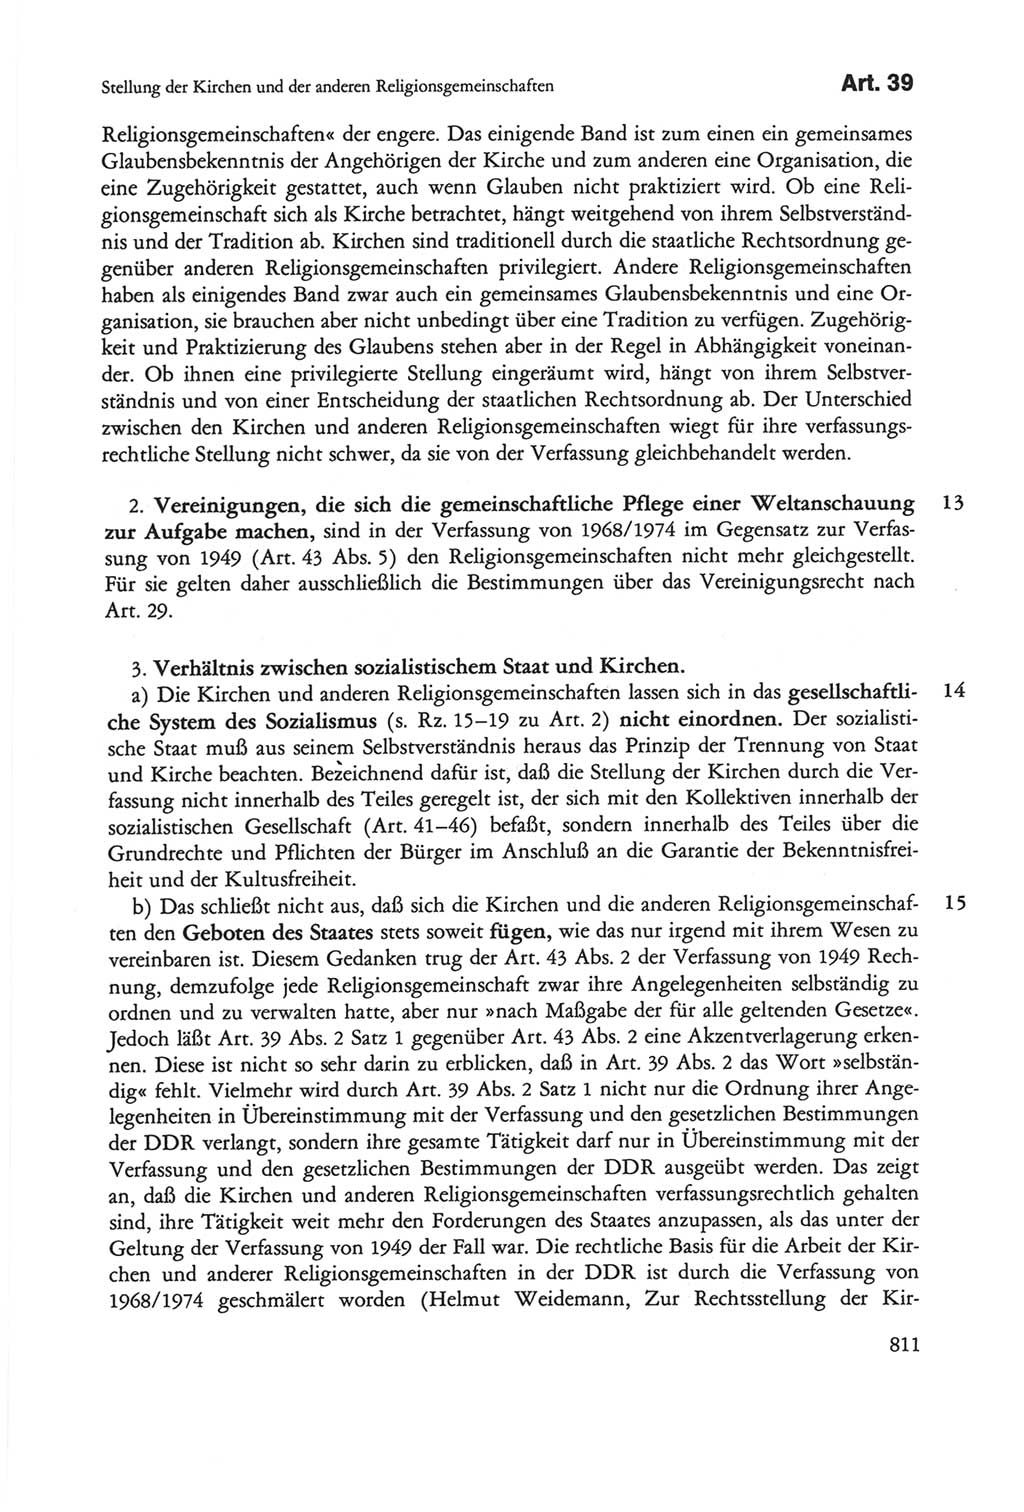 Die sozialistische Verfassung der Deutschen Demokratischen Republik (DDR), Kommentar 1982, Seite 811 (Soz. Verf. DDR Komm. 1982, S. 811)